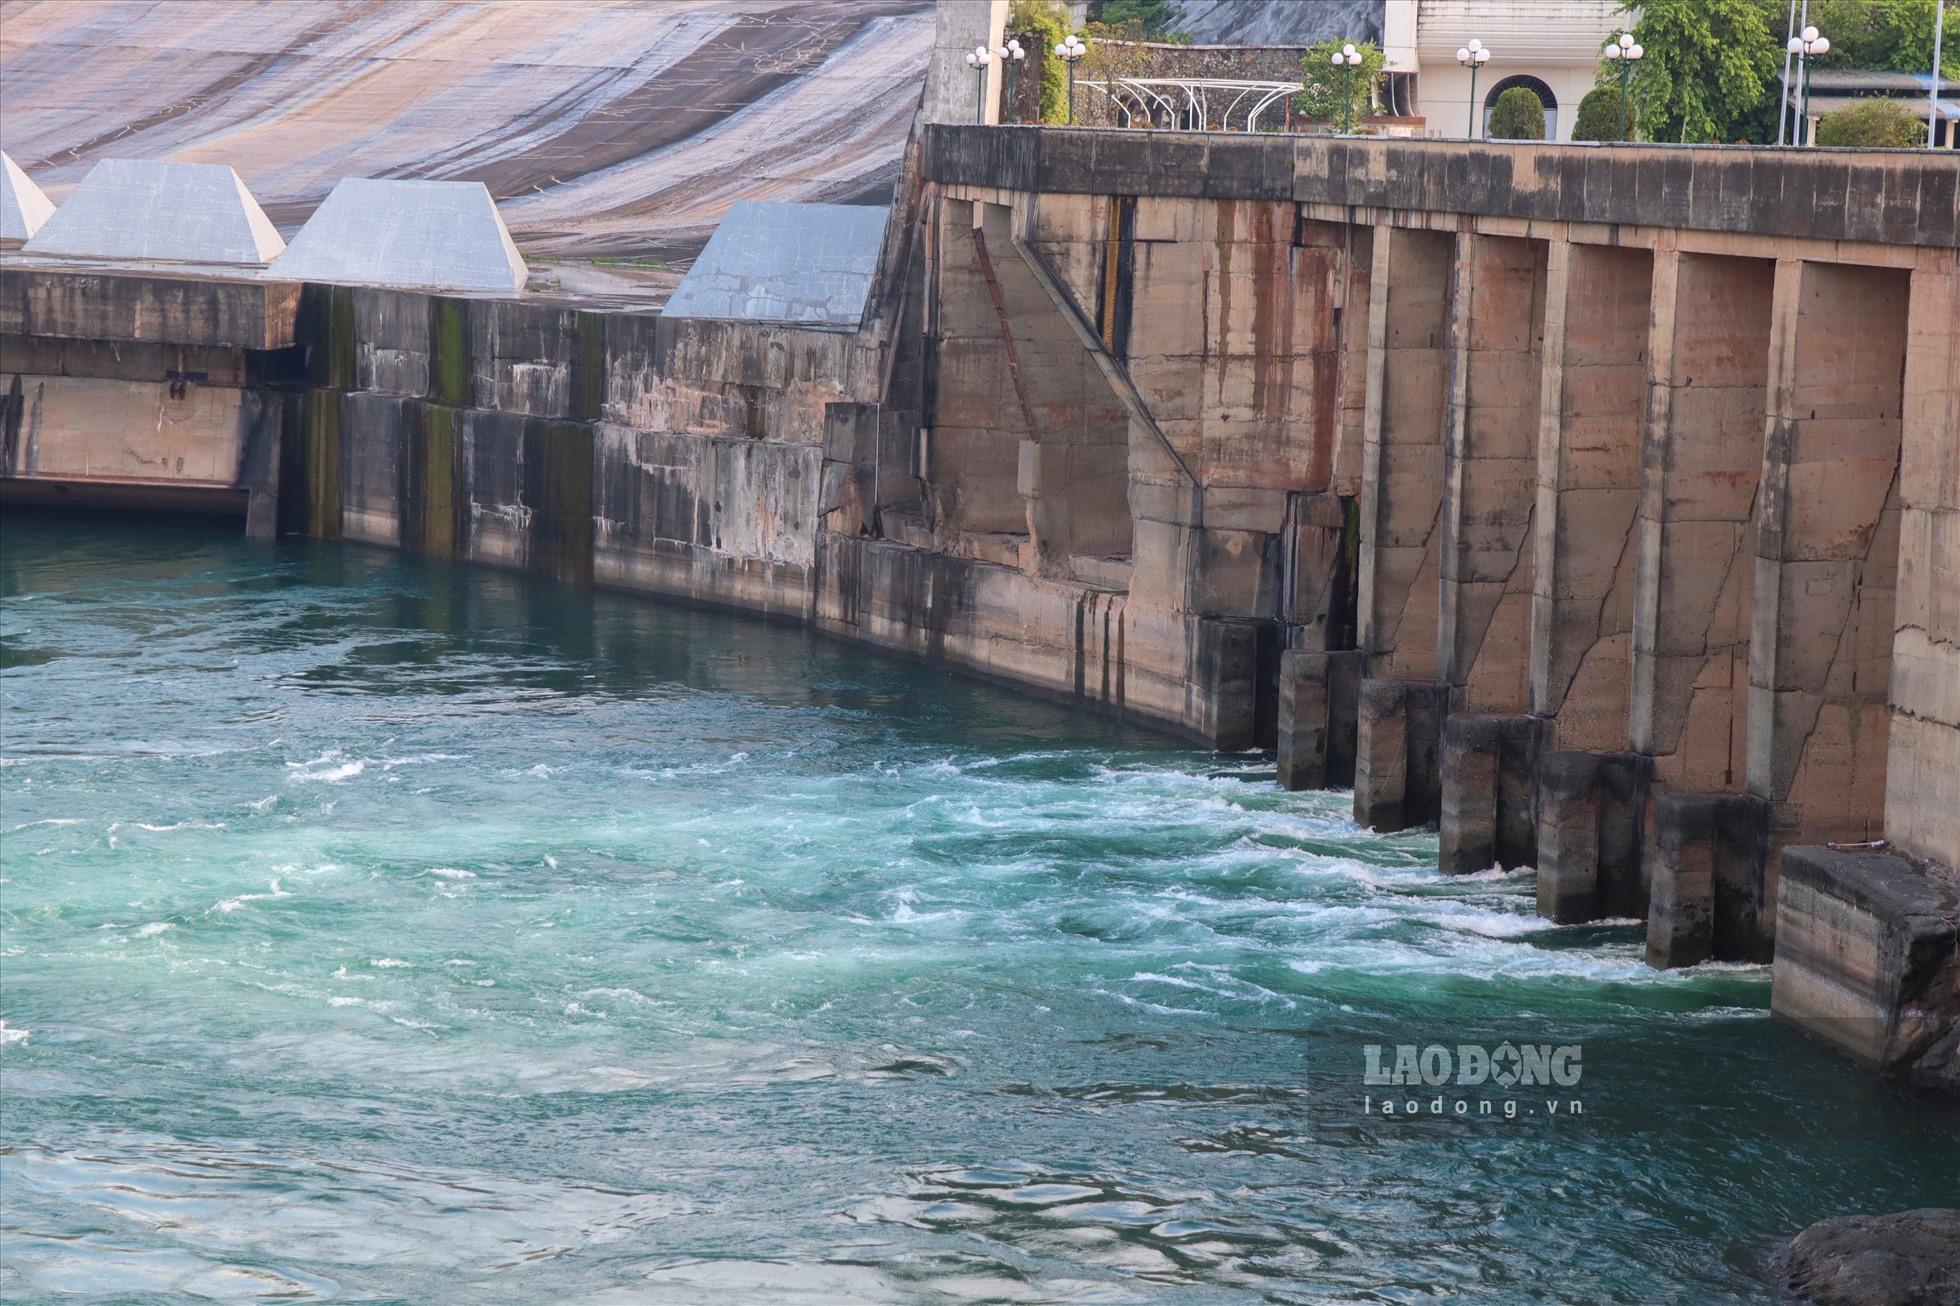 Tại Thủy điện Hòa Bình, các cửa xả nước có dòng chảy xiết, tạo ra nhiều bọt khí, lượng lớn hơn nhiều so với thời điểm PV ghi nhận trước đó (ngày 12.6).